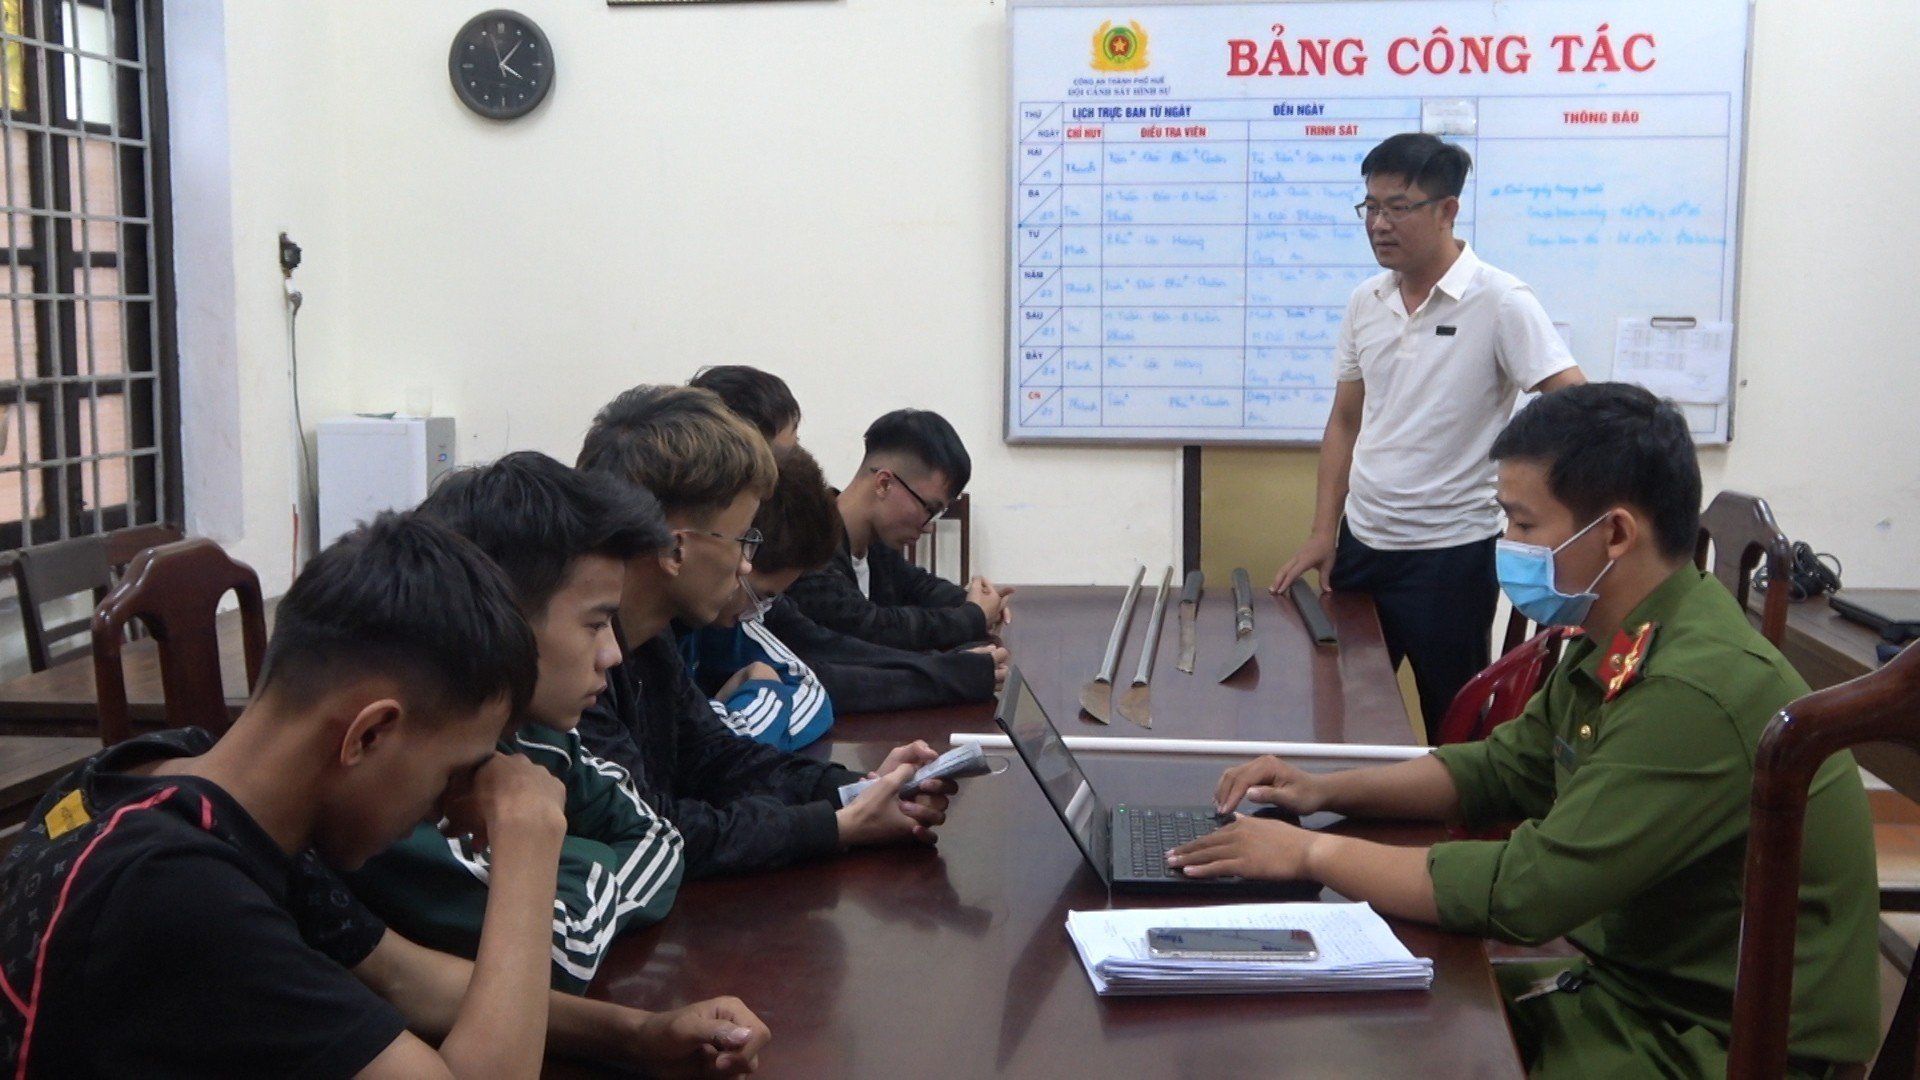 Thừa Thiên Huế: Ngăn chặn 02 nhóm thanh thiếu niên mang hung khí giải quyết mâu thuẫn